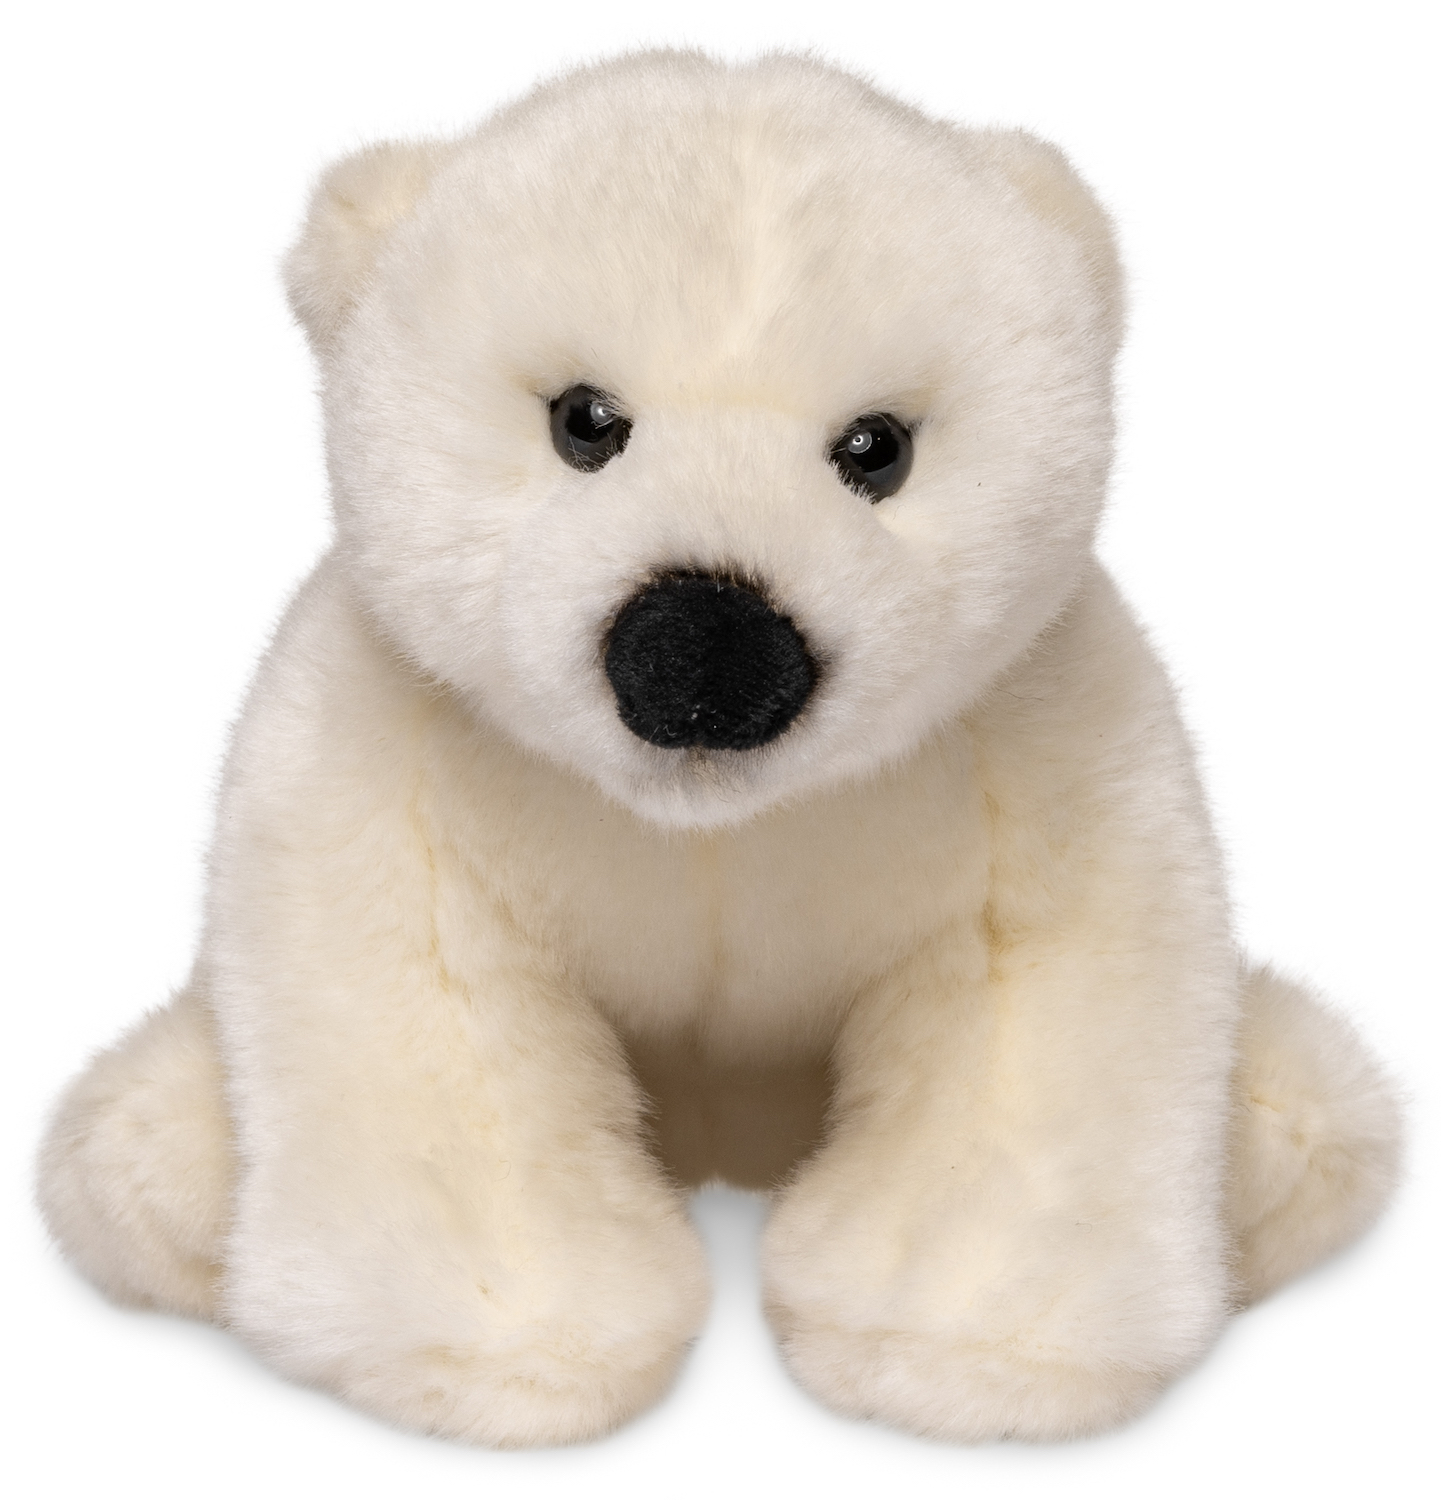 Polar bear cub, sitting - 16 cm (height) - plush bear, polar bear - soft toy, cuddly toy